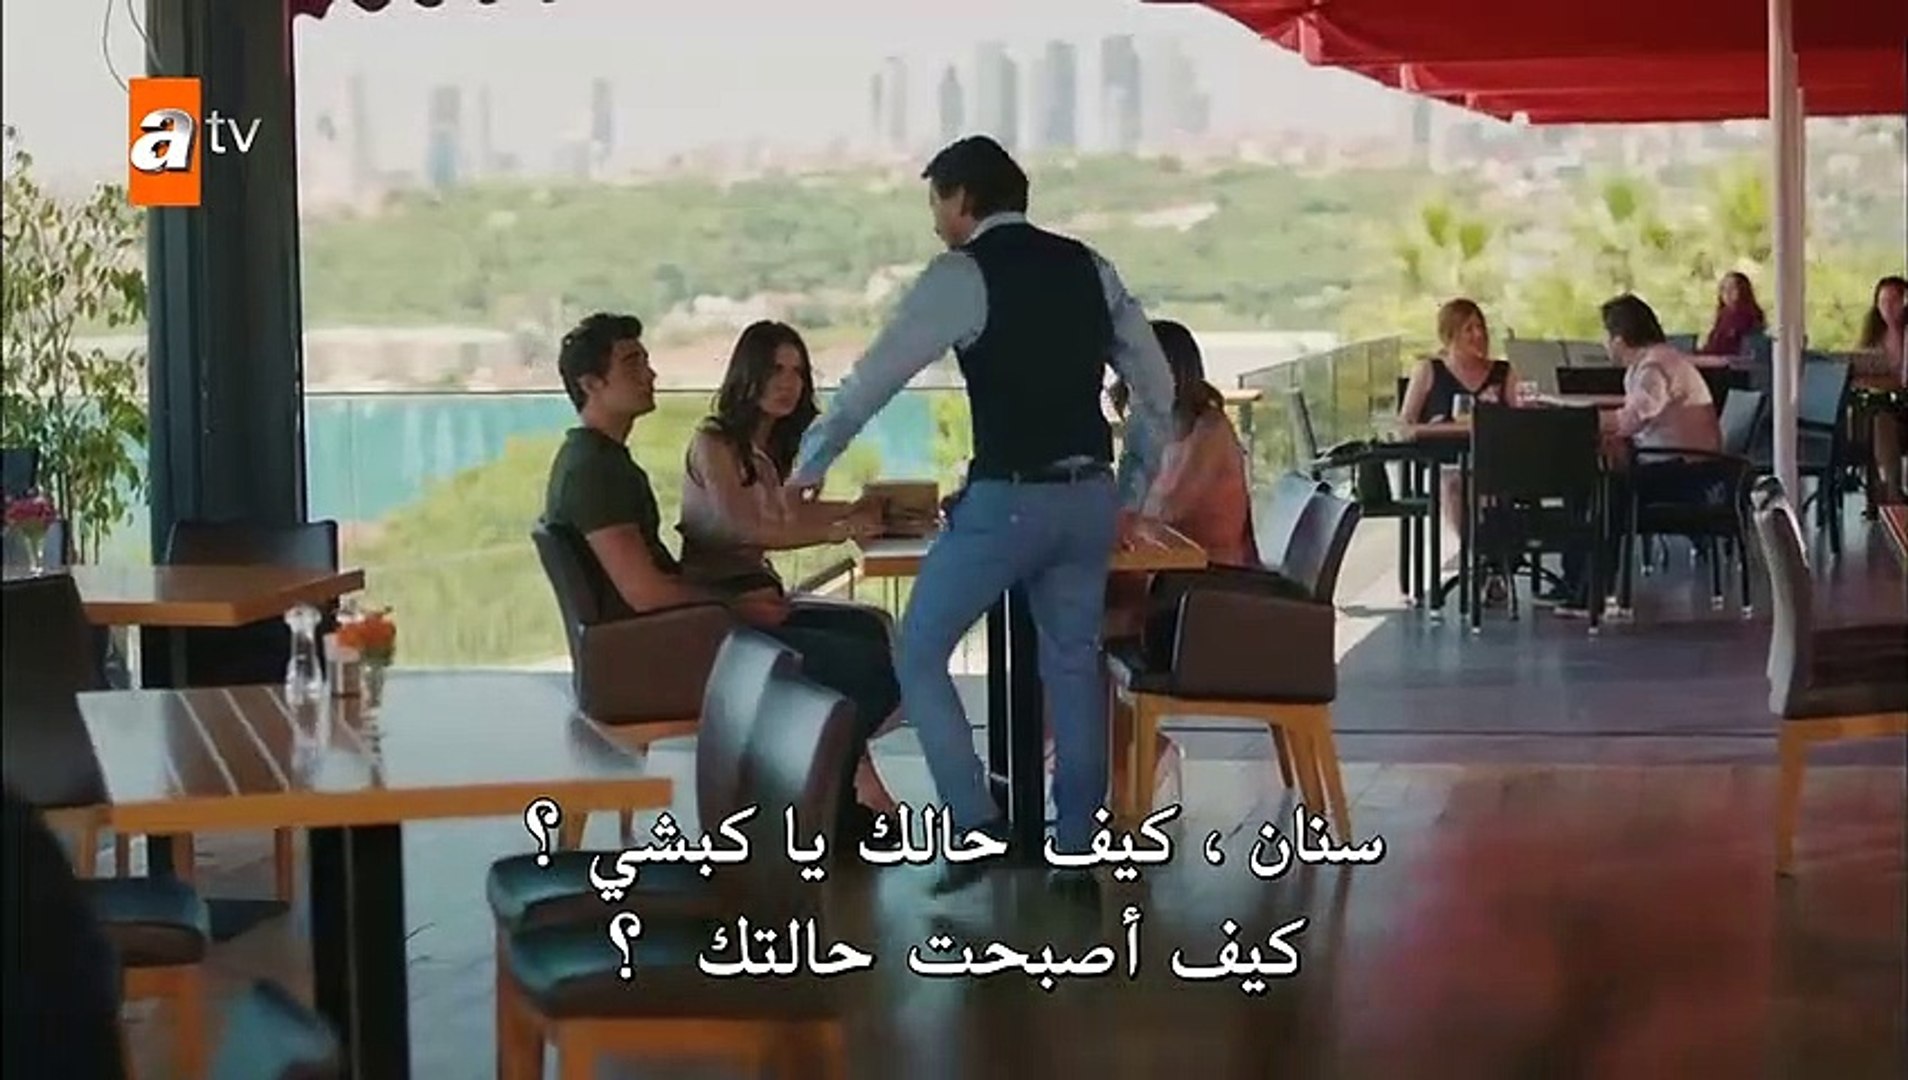 ⁣مسلسل لا احد يعلم الحلقة 6 القسم 3 مترجم للعربية - قصة عشق اكسترا